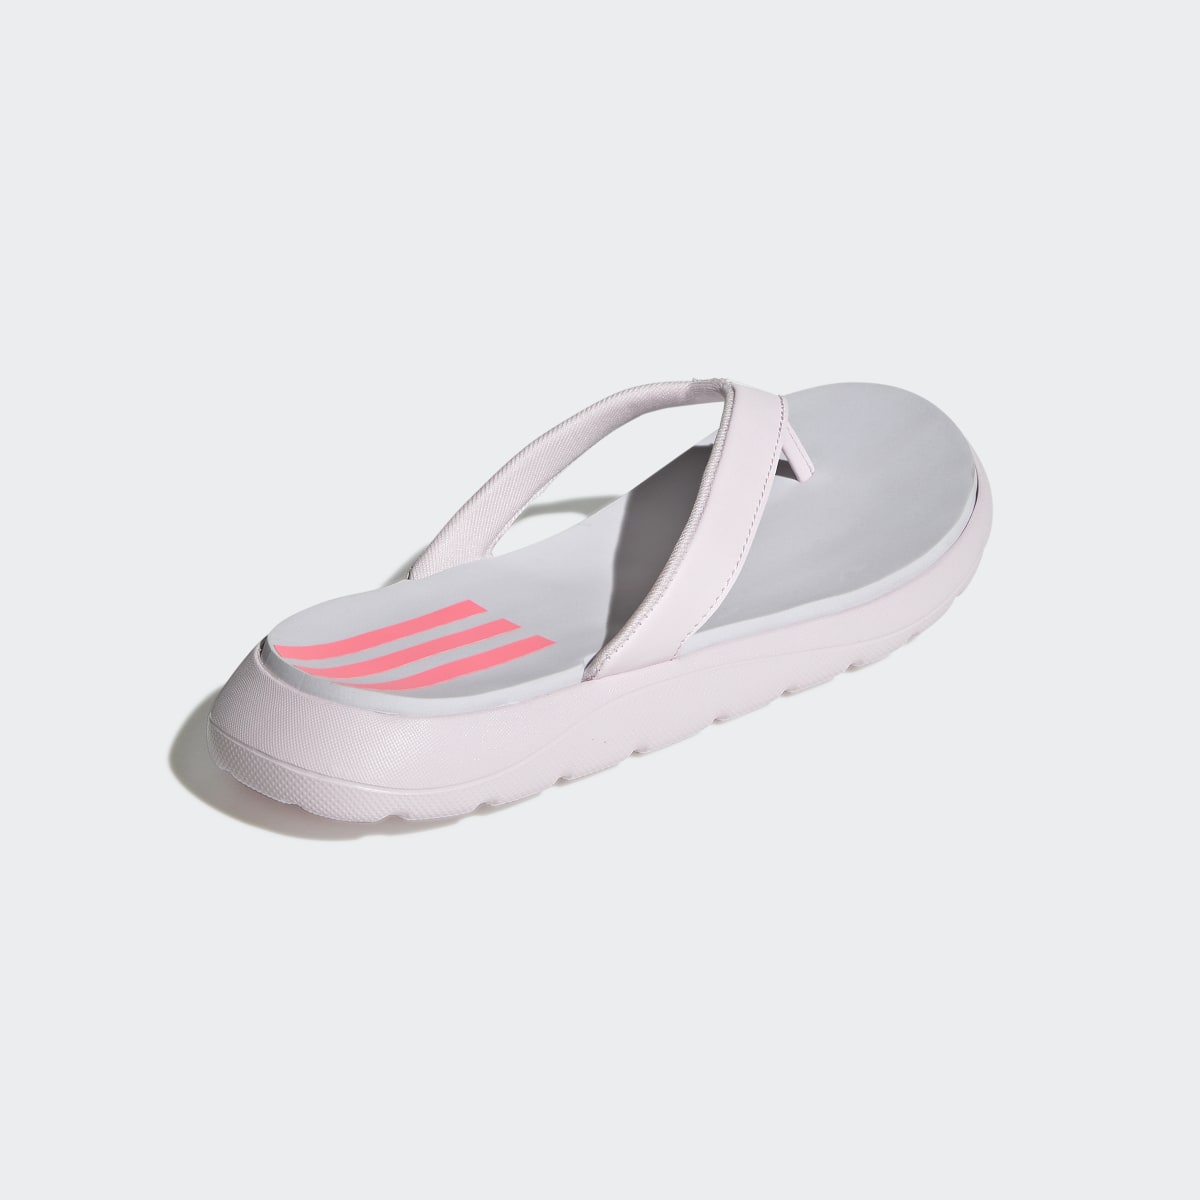 Adidas Comfort Flip-Flops. 6